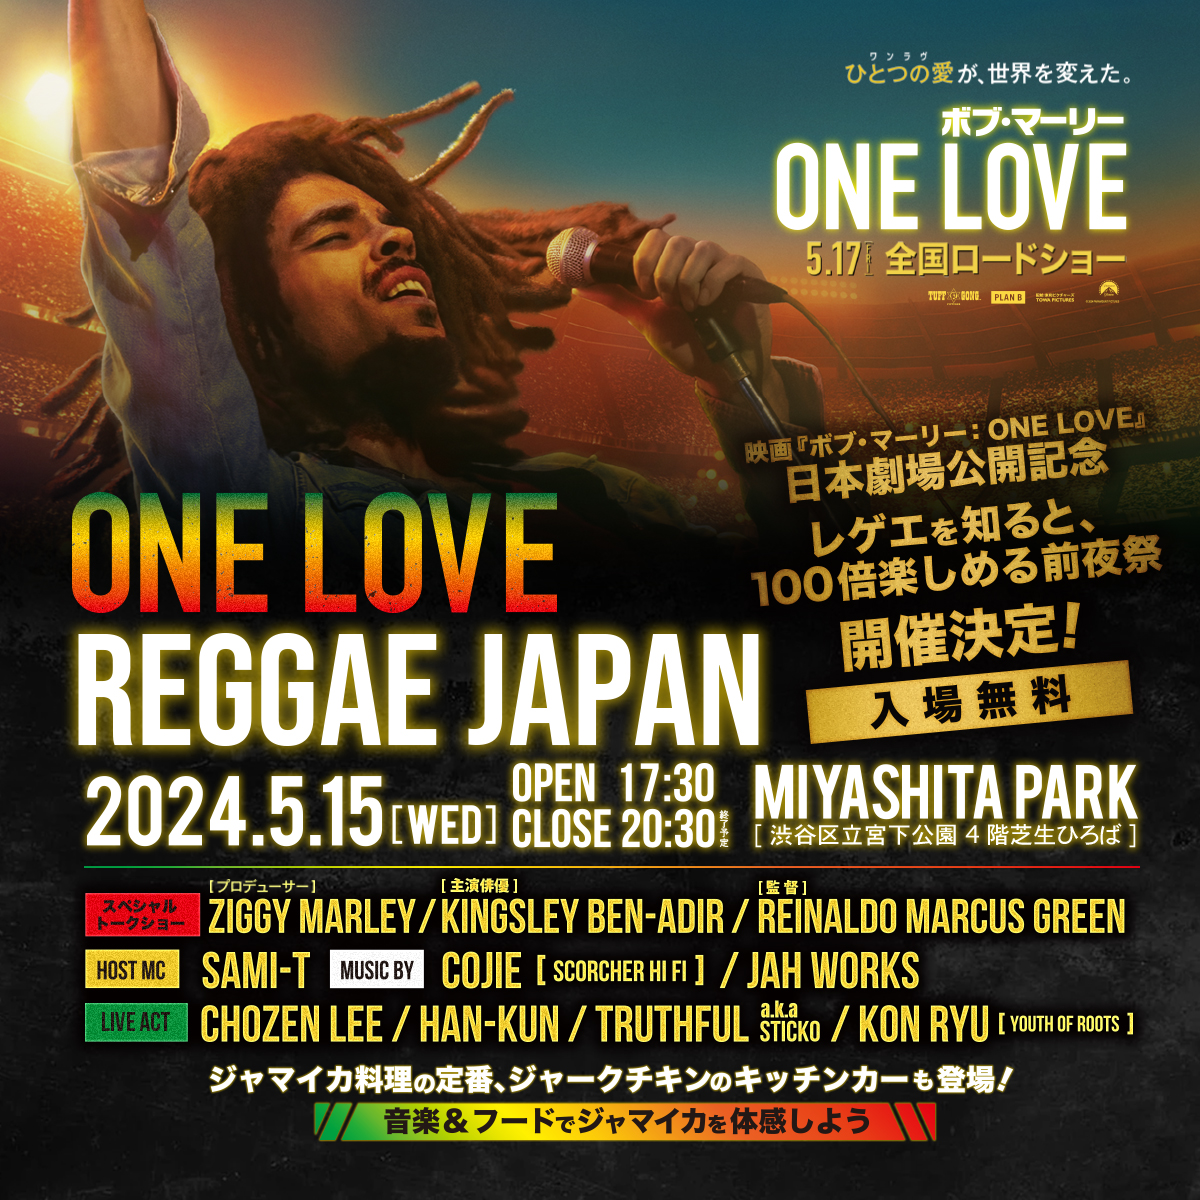 映画『ボブ・マーリー：ONE LOVE』 全国ロードショー記念✨ 5月15日(水)に行われる、 レゲエを知ると100倍楽しめる前夜祭、 ONE LOVE REGGAE JAPANに HAN-KUNの出演が決定! 日時 5月15日(水) 17:30-20:30(終了予定) at MIYASHITA PARK (4階) 入場: 無料 #ボブマーリーワンラヴ @BM_OneLove_JP